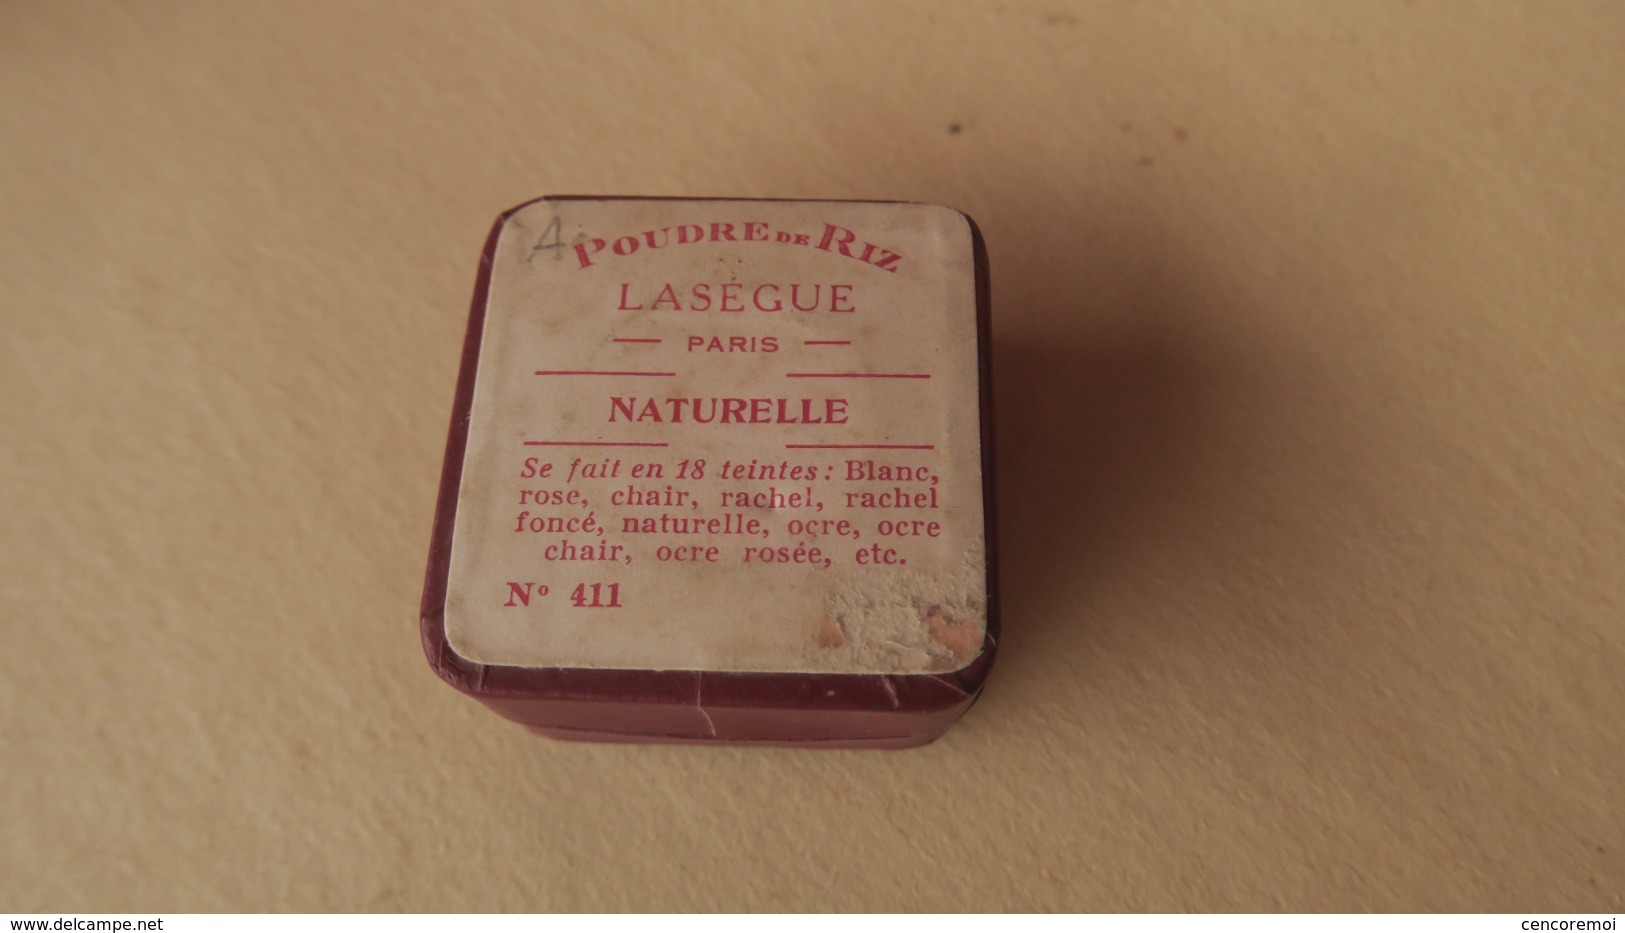 Boite à poudre ancienne de collection, Lasègue, Paris, poudre de riz Naturelle n° 411, parfumerie Française